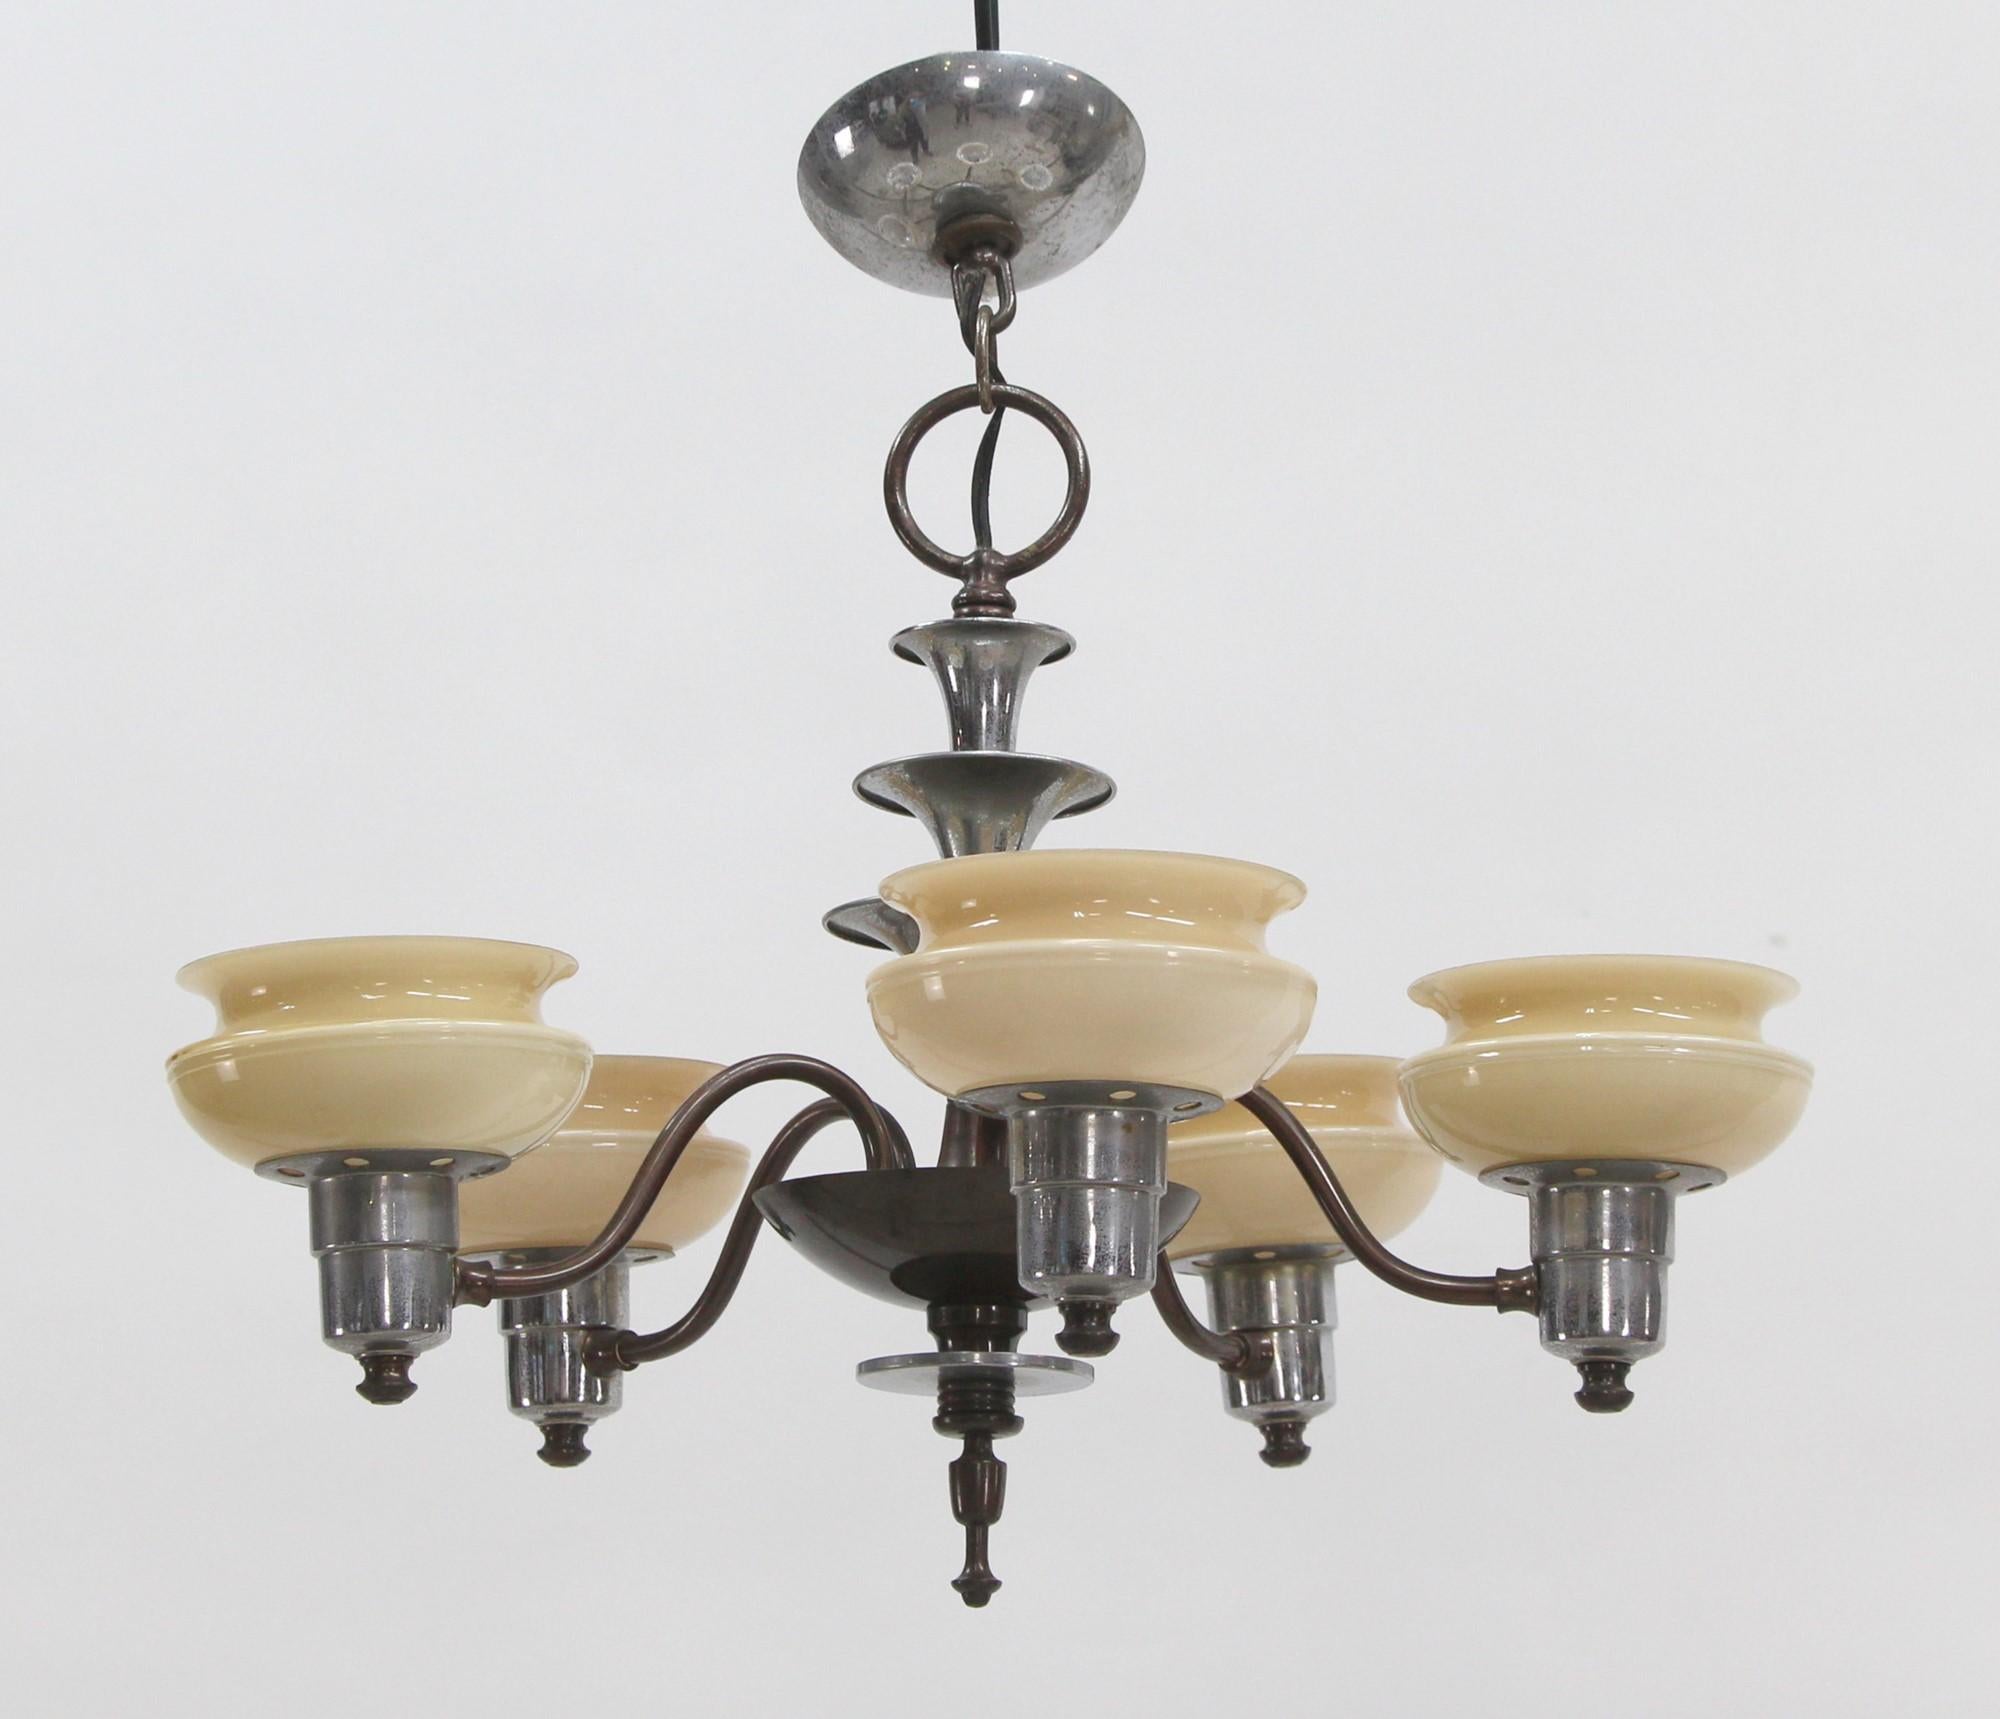 Fünflampiger Art Deco-Kronleuchter aus den 1930er Jahren mit originalen Vanille-Schirmen. Details aus Messing schmücken einen Rahmen aus poliertem Nickel. Gereinigt und verkabelt. Bitte beachten Sie, dieser Artikel befindet sich in unserem Standort